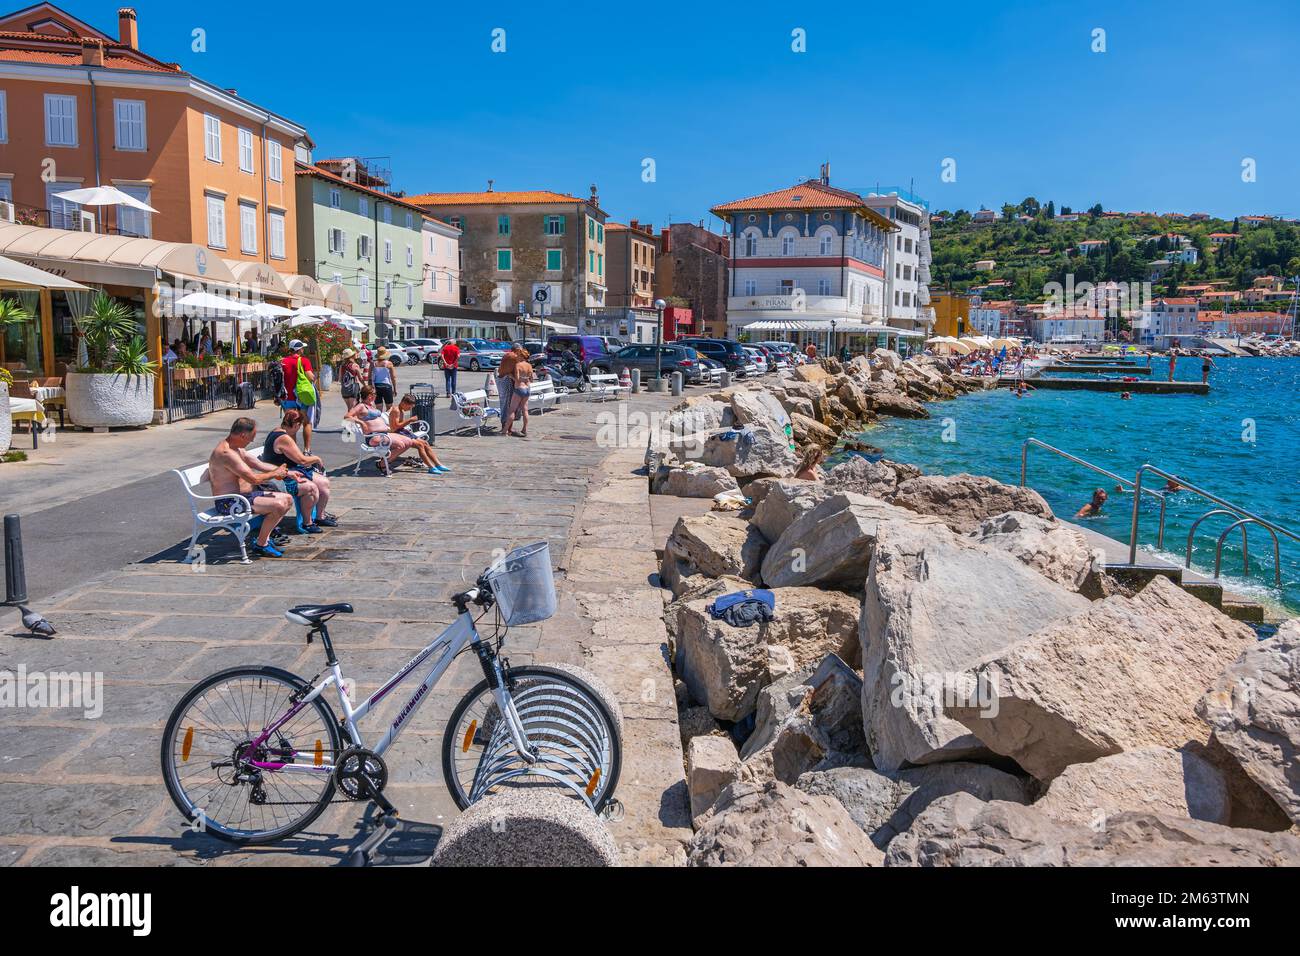 Piran, Slovenia - 20 luglio 2022: Le persone si rilassano sul lungomare nella località turistica del Mare Adriatico sulla costa sud-occidentale slovena. Foto Stock